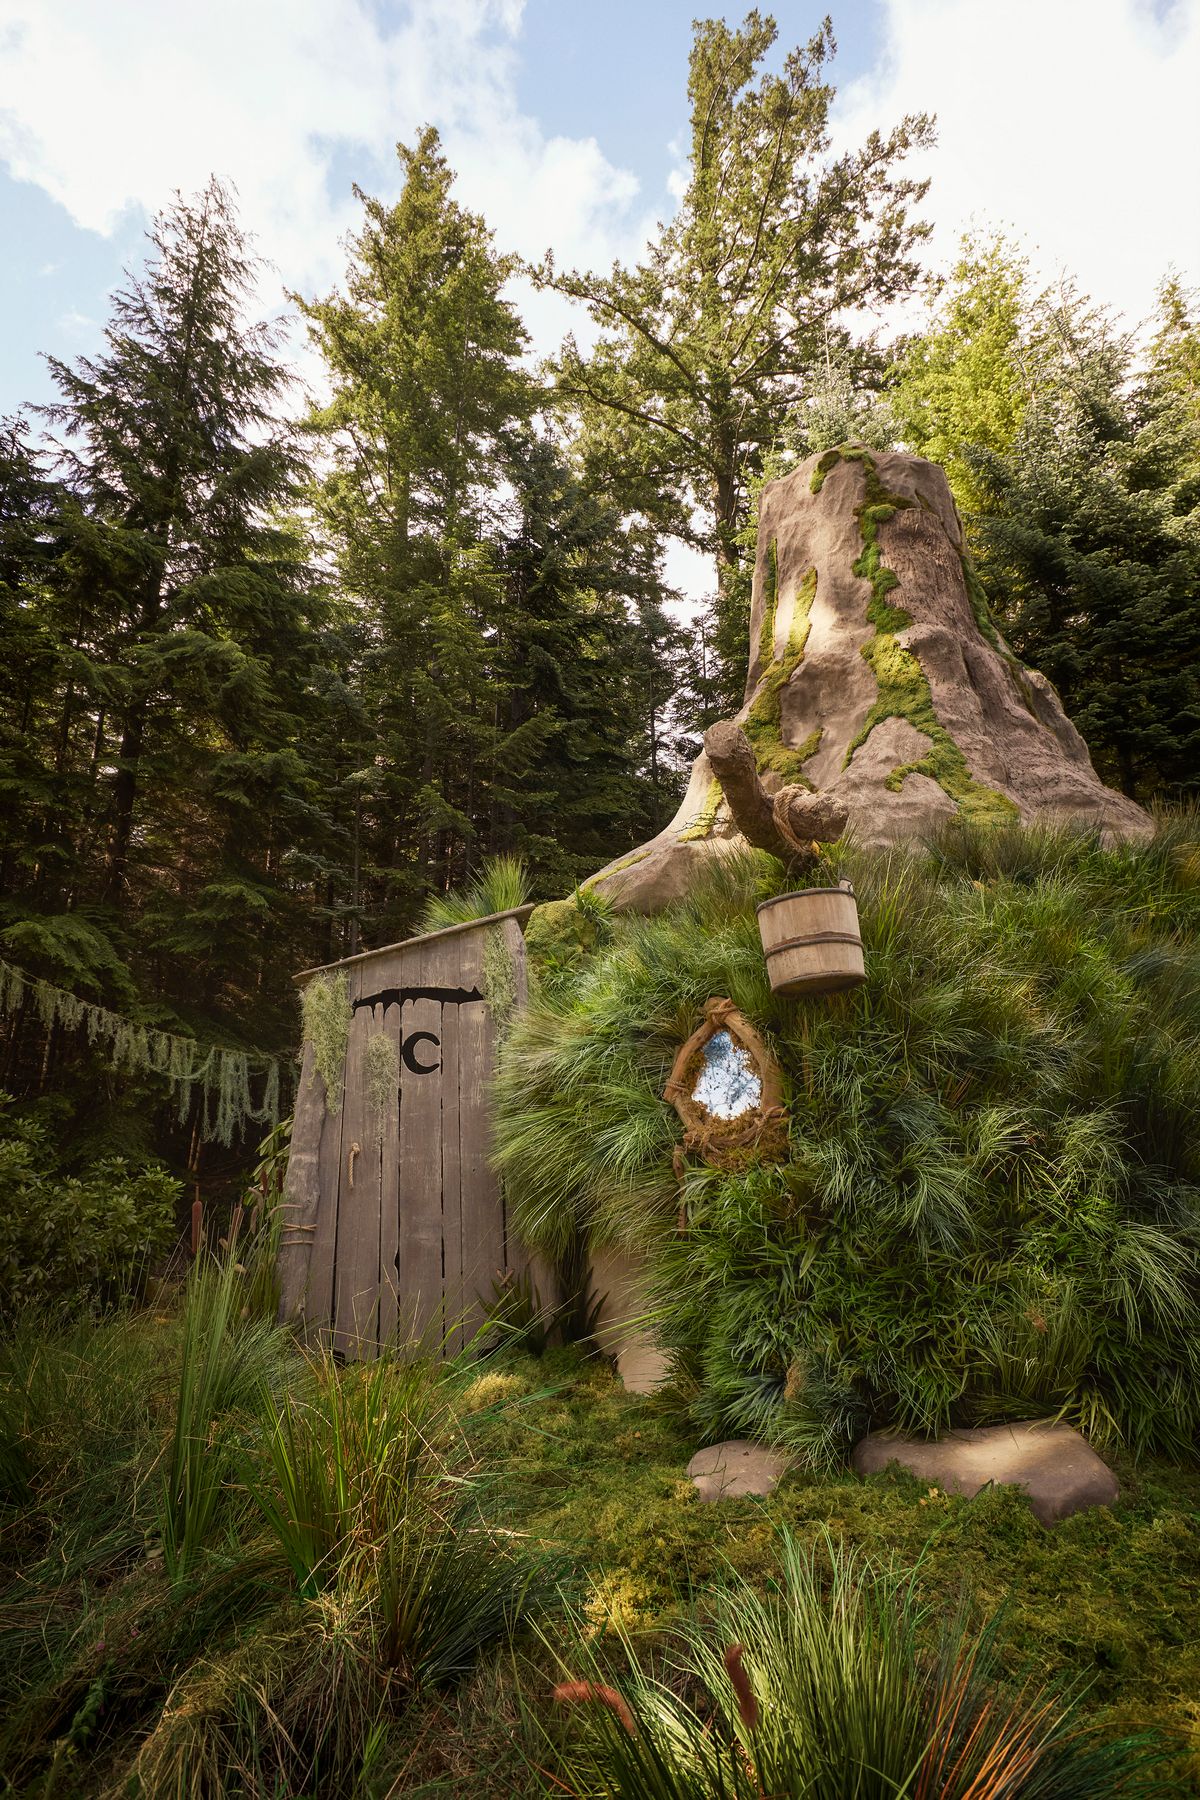 Des activités de plein air comme allumer un feu, raconter des histoires et visiter les toilettes extérieures emblématiques de Shrek sont également proposées.